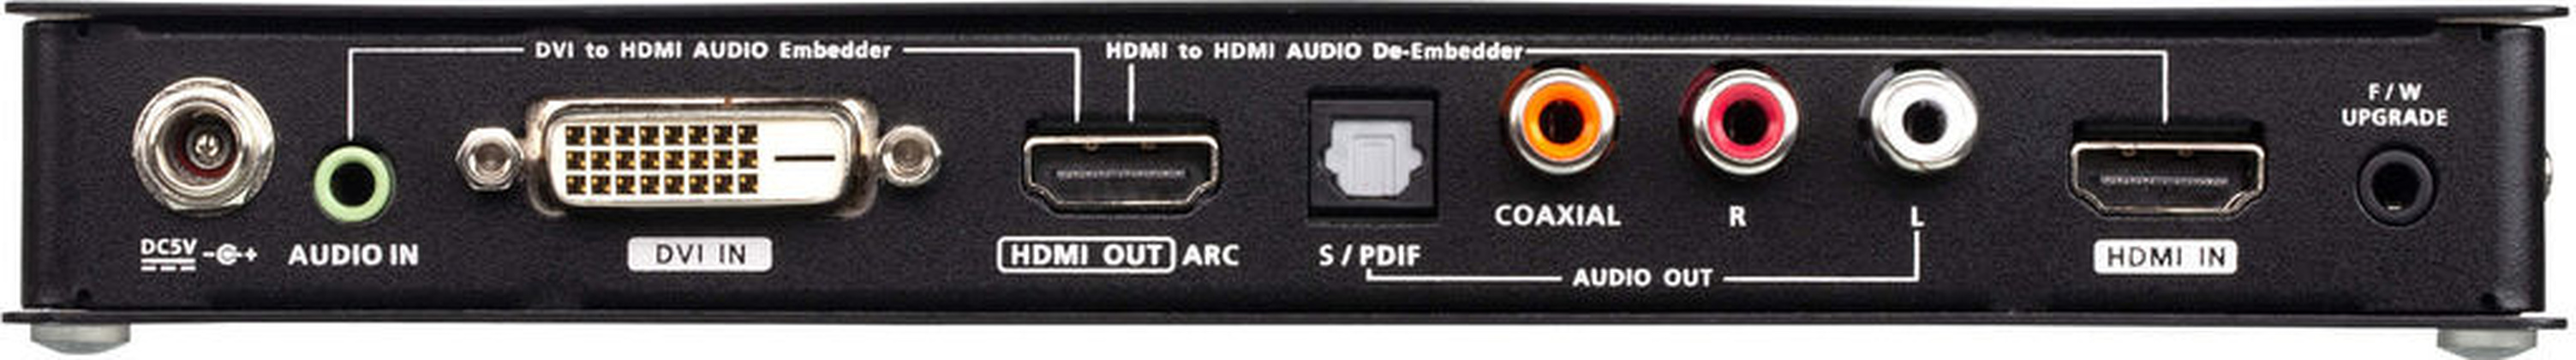 Преобразователь видеосигнала HDMI/DVI -> HDMI "Aten" [VC881-AT-G]